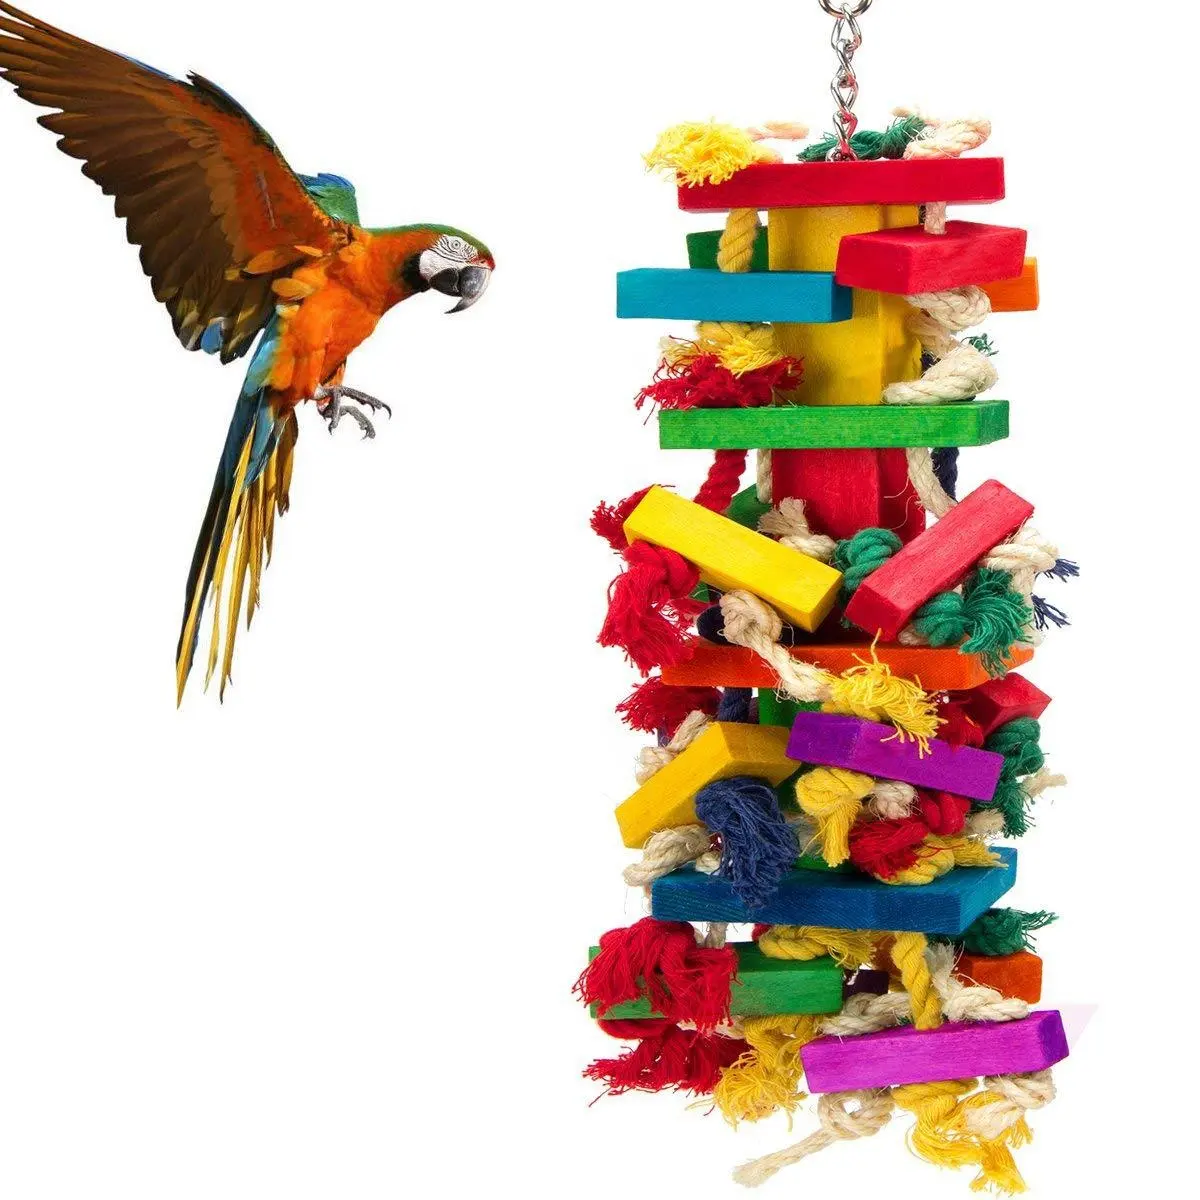 VORSCHLUSS Papageien bunt kletter-kaugenspielzeug hängend aus Holz lustiges Baumwollseil Papageien-kaugenspielzeug beißen